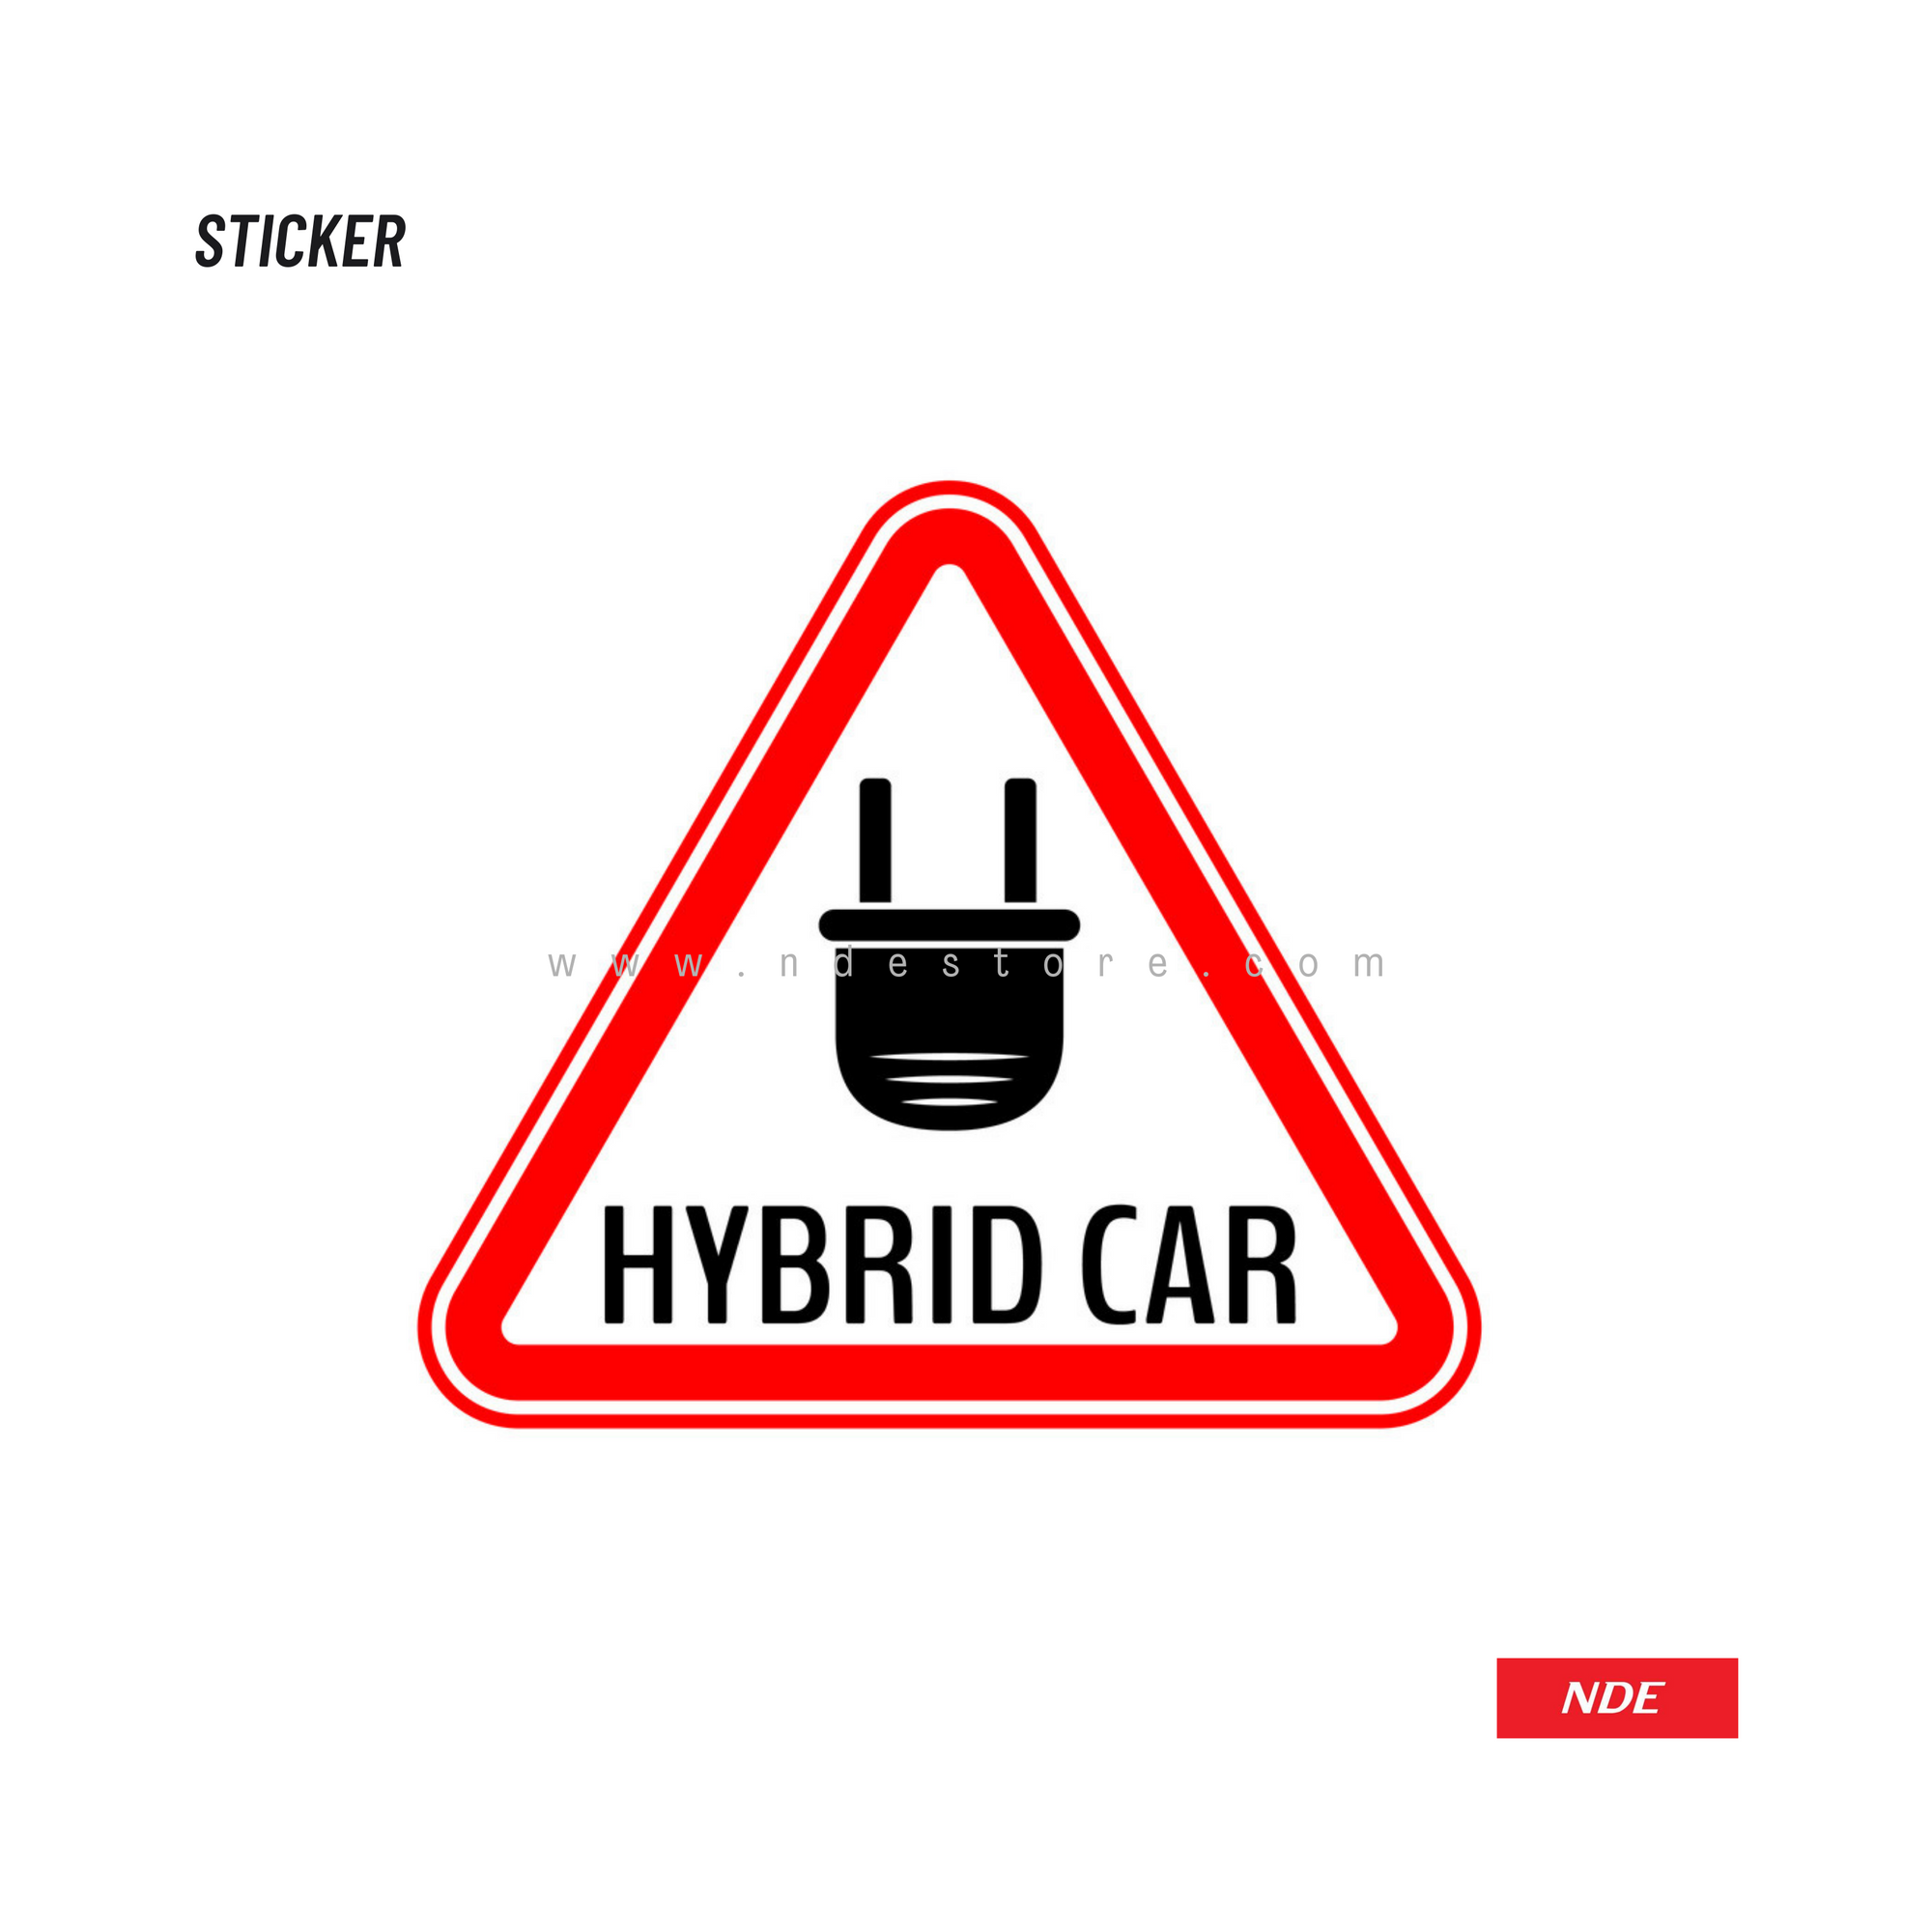 STICKER, HYBRID CAR